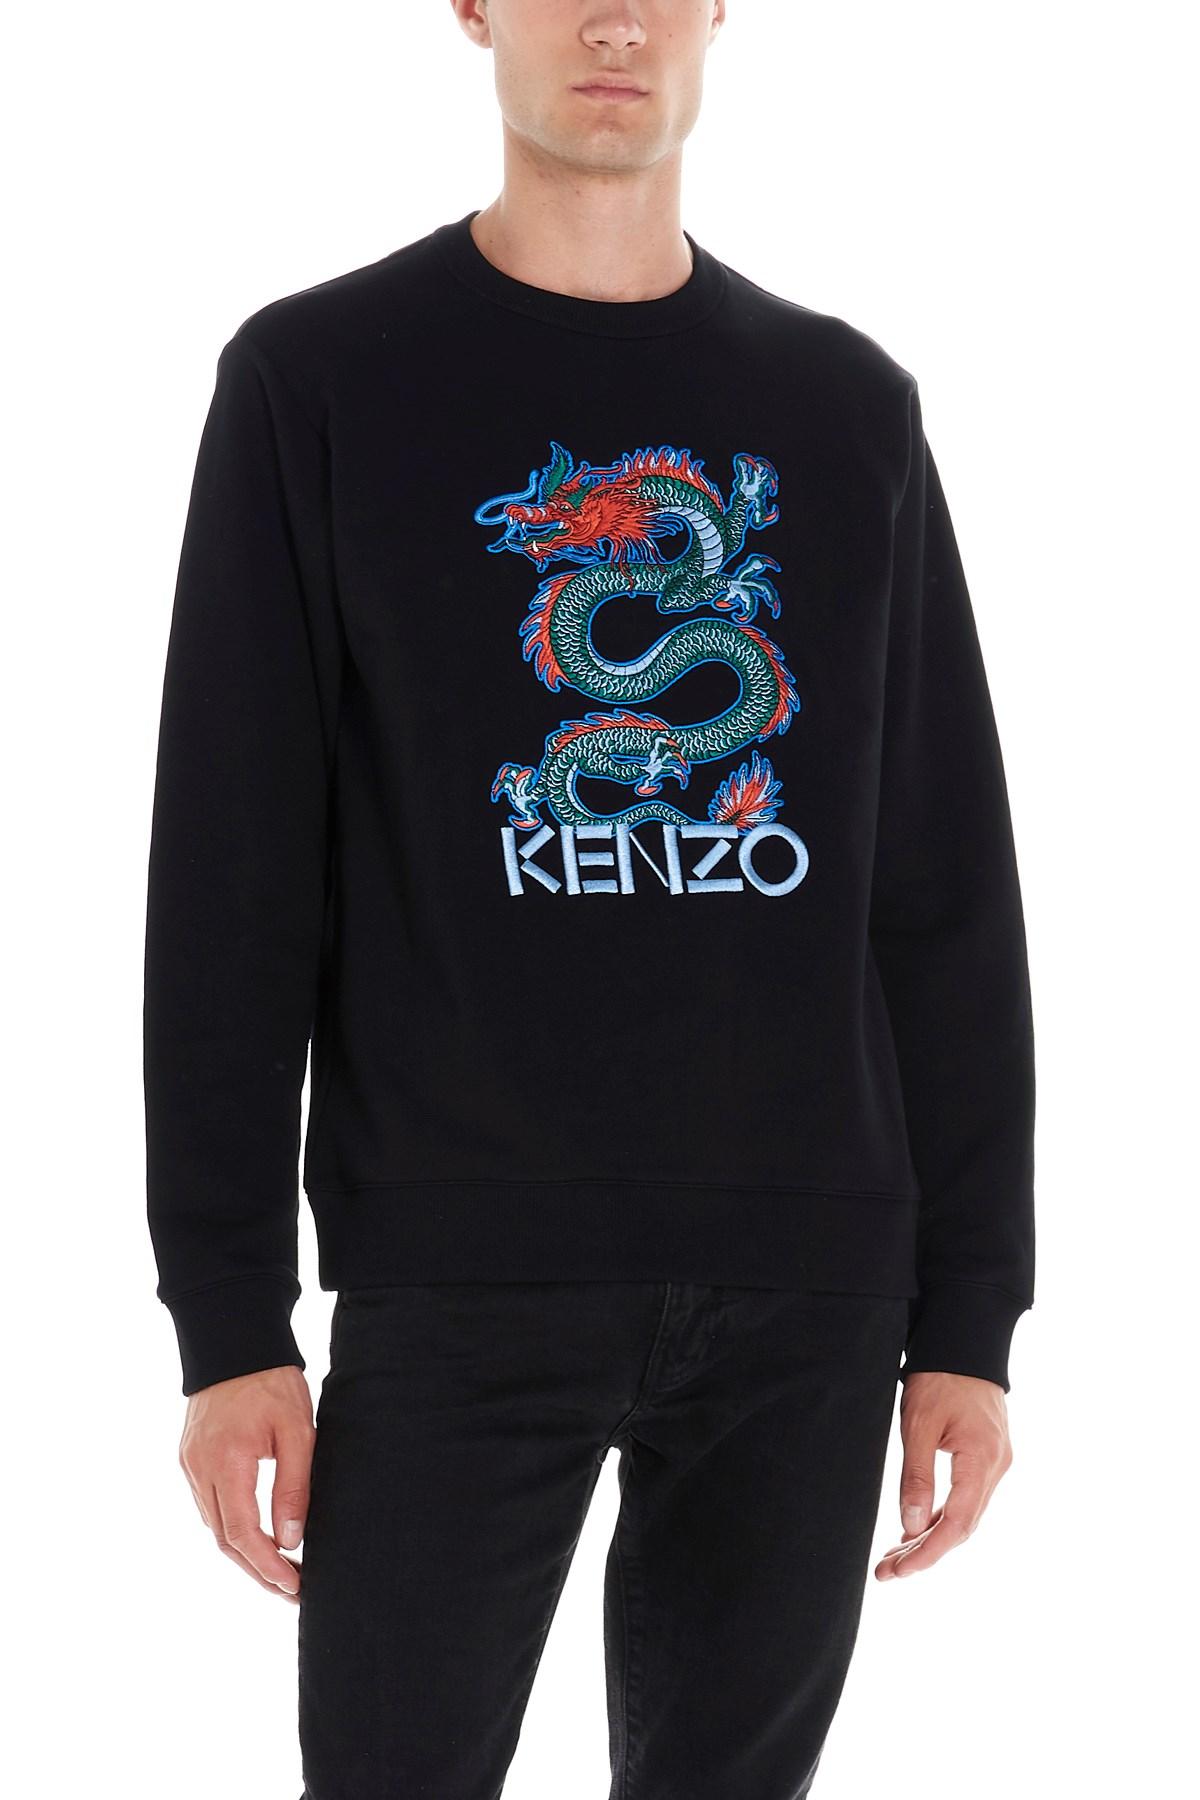 kenzo dragon sweater